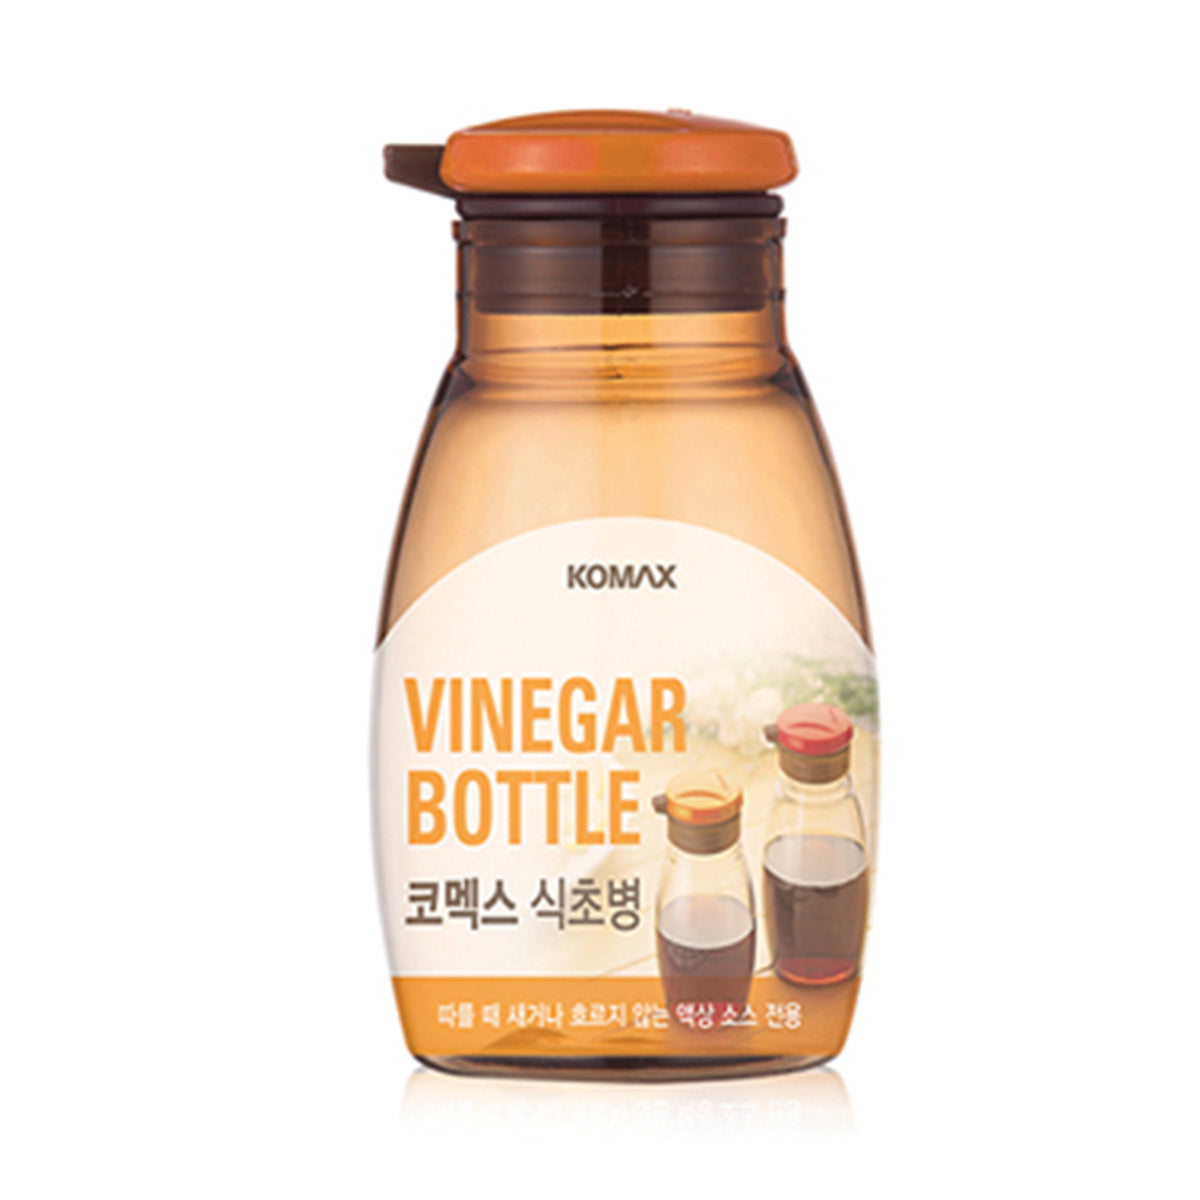 Vinegar bottle